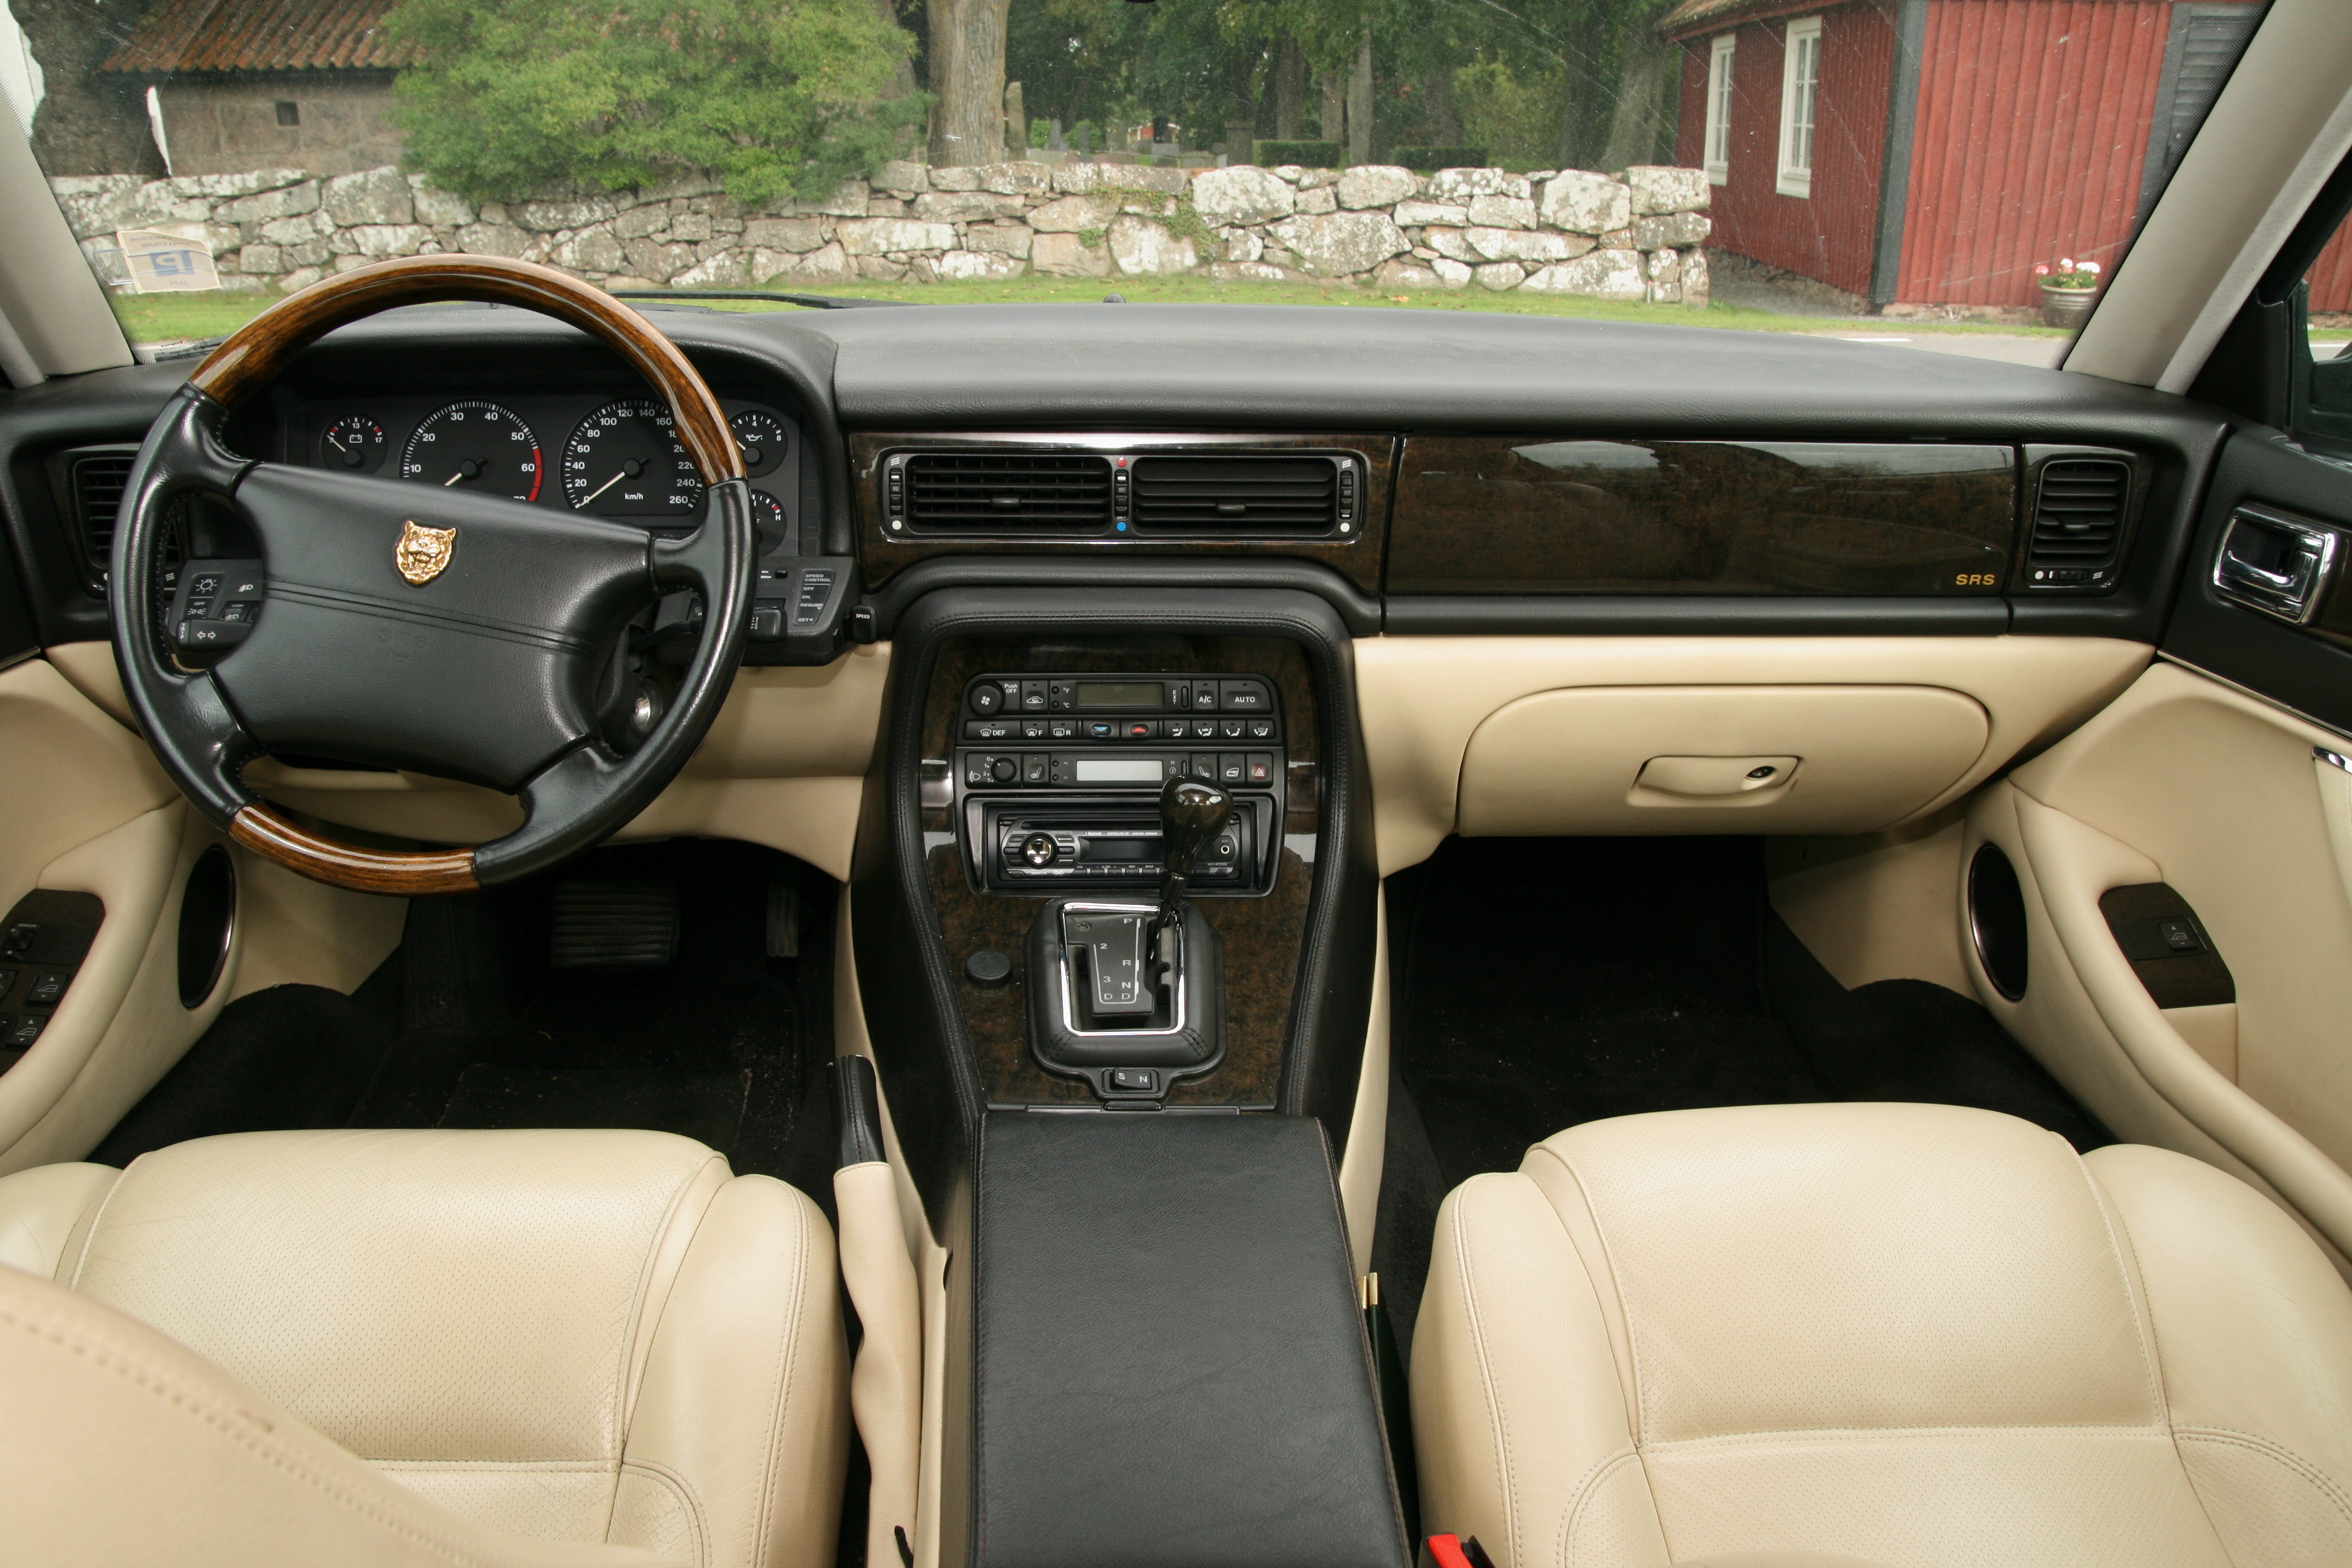 Härlig läderinteriör i Jaguar XJR med en särskild svårdefinierbar Jaguar-känsla. En del plastighet i knappar och reglage. 